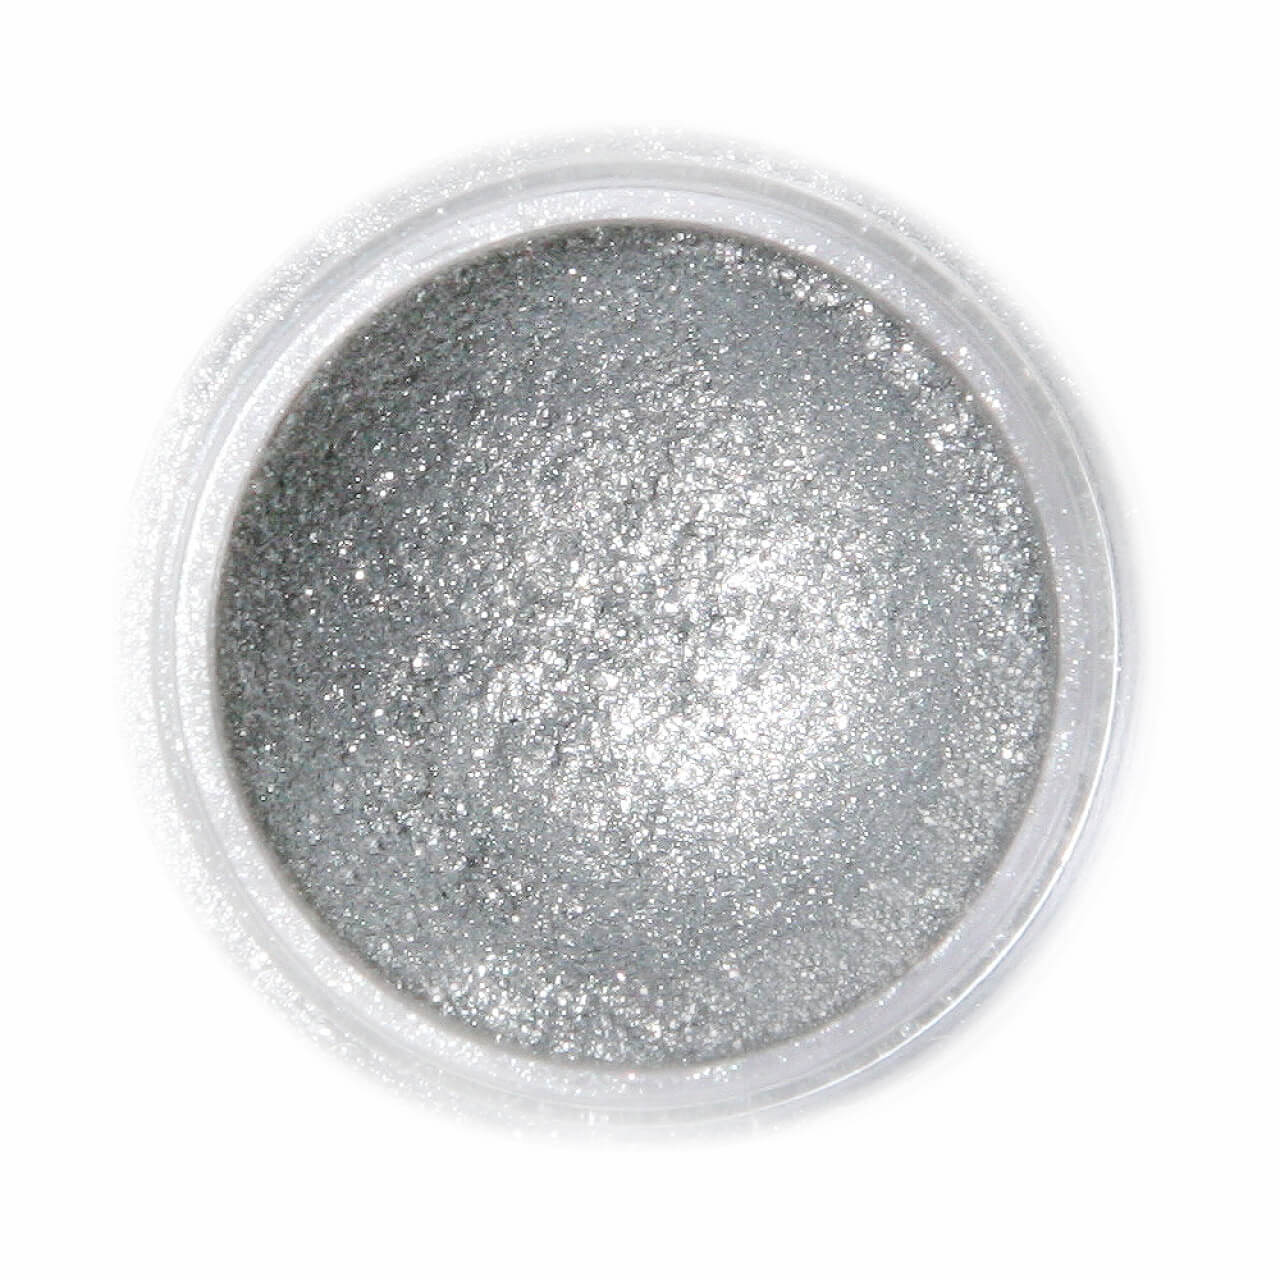 FRACTAL - Shimmering Ételdekorációs Selyempor - Szikrázó Sötét Ezüt ( Sparkling Dark Silver ) - 3,5g